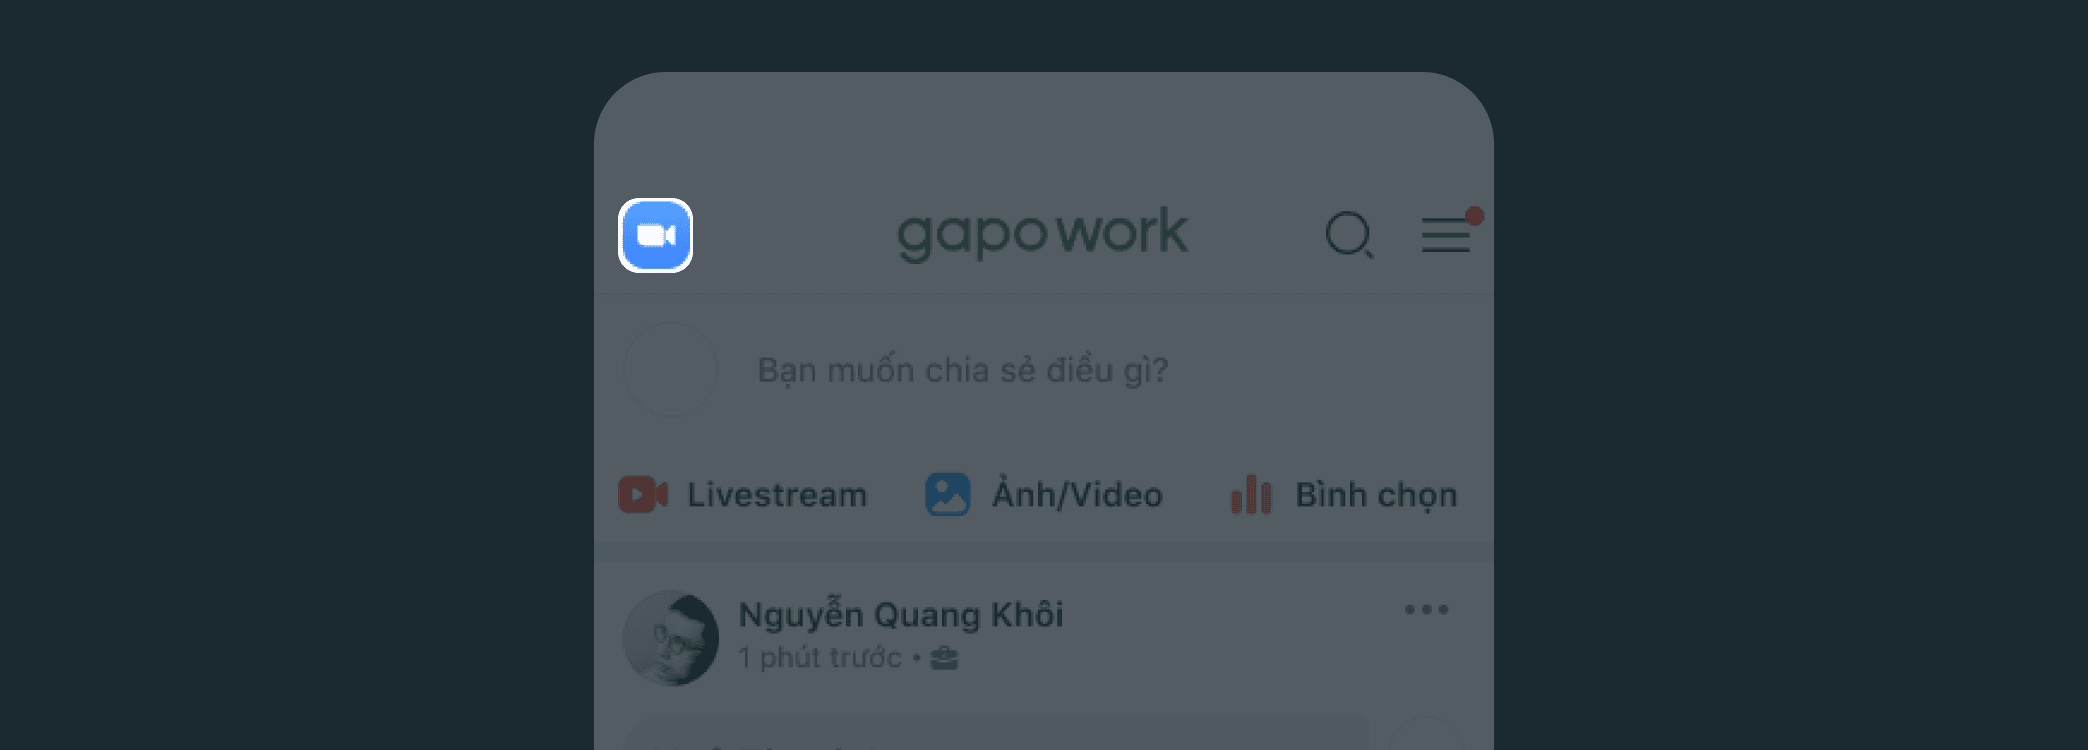 Làm thế nào để tạo nhanh cuộc họp Zoom trên GapoWork? - Ảnh 4